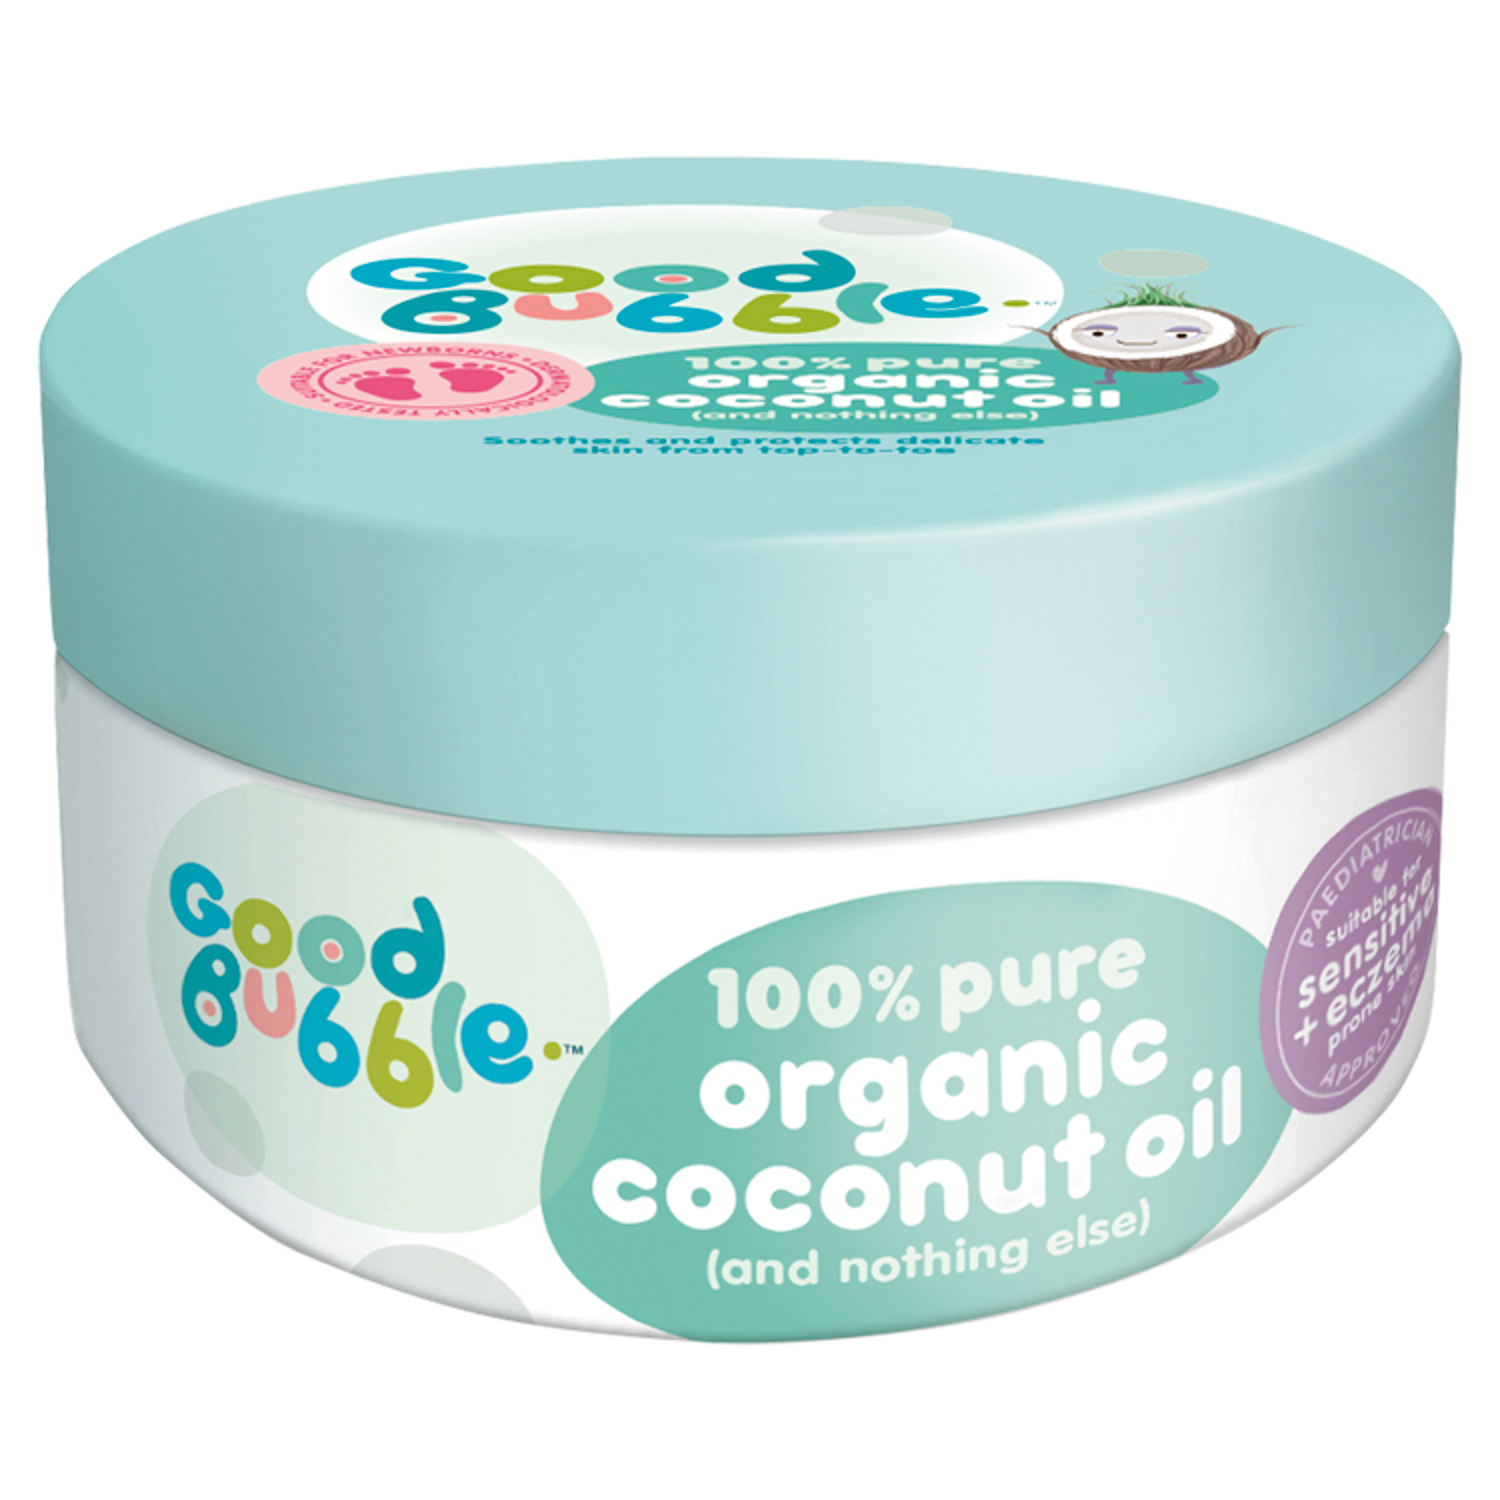 Good Bubble 100% Pure Organic Coconut Oil 185g